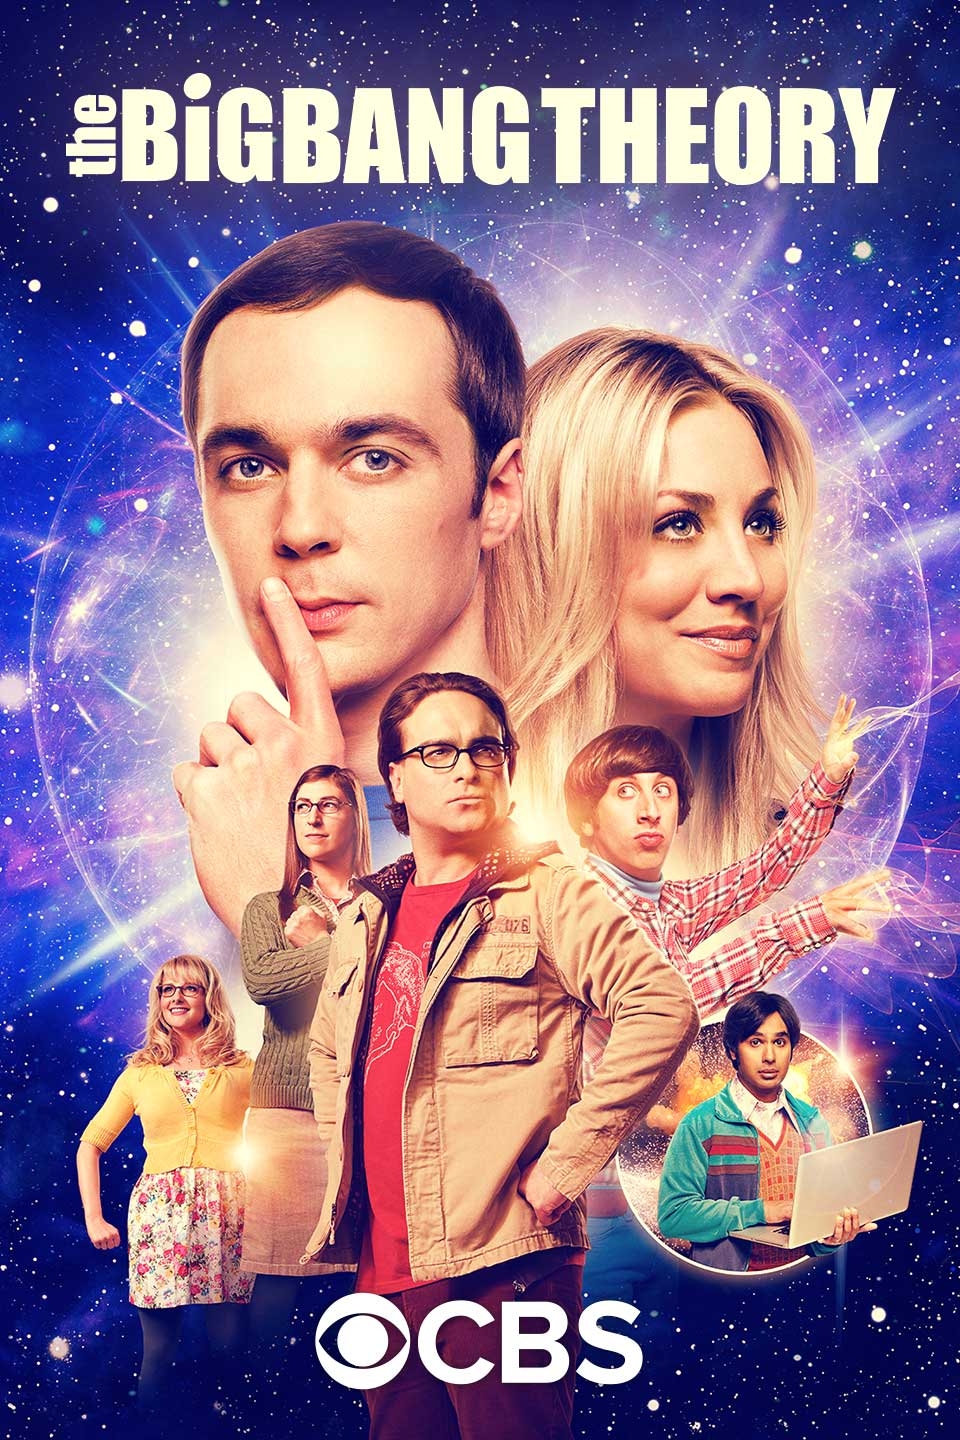 The Big Bang Theory (season 3) - Wikipedia